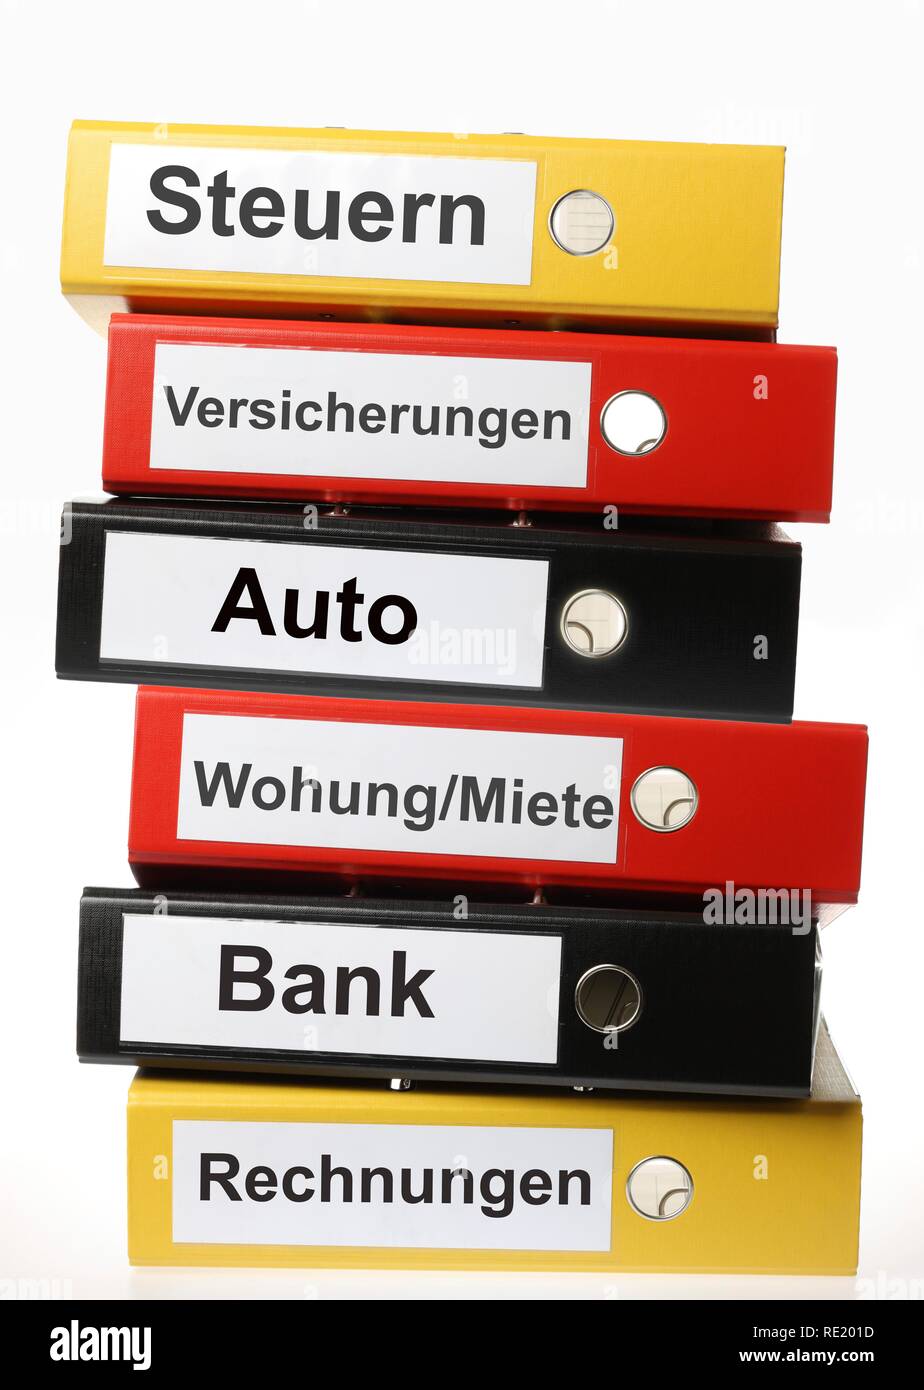 Schwarz, Gelb und Rot Ringbücher, in deutscher Sprache beschriftet für  Steuern, Versicherung, Auto, Wohnung, mieten, Bankkonten, Rechnungen  Stockfotografie - Alamy